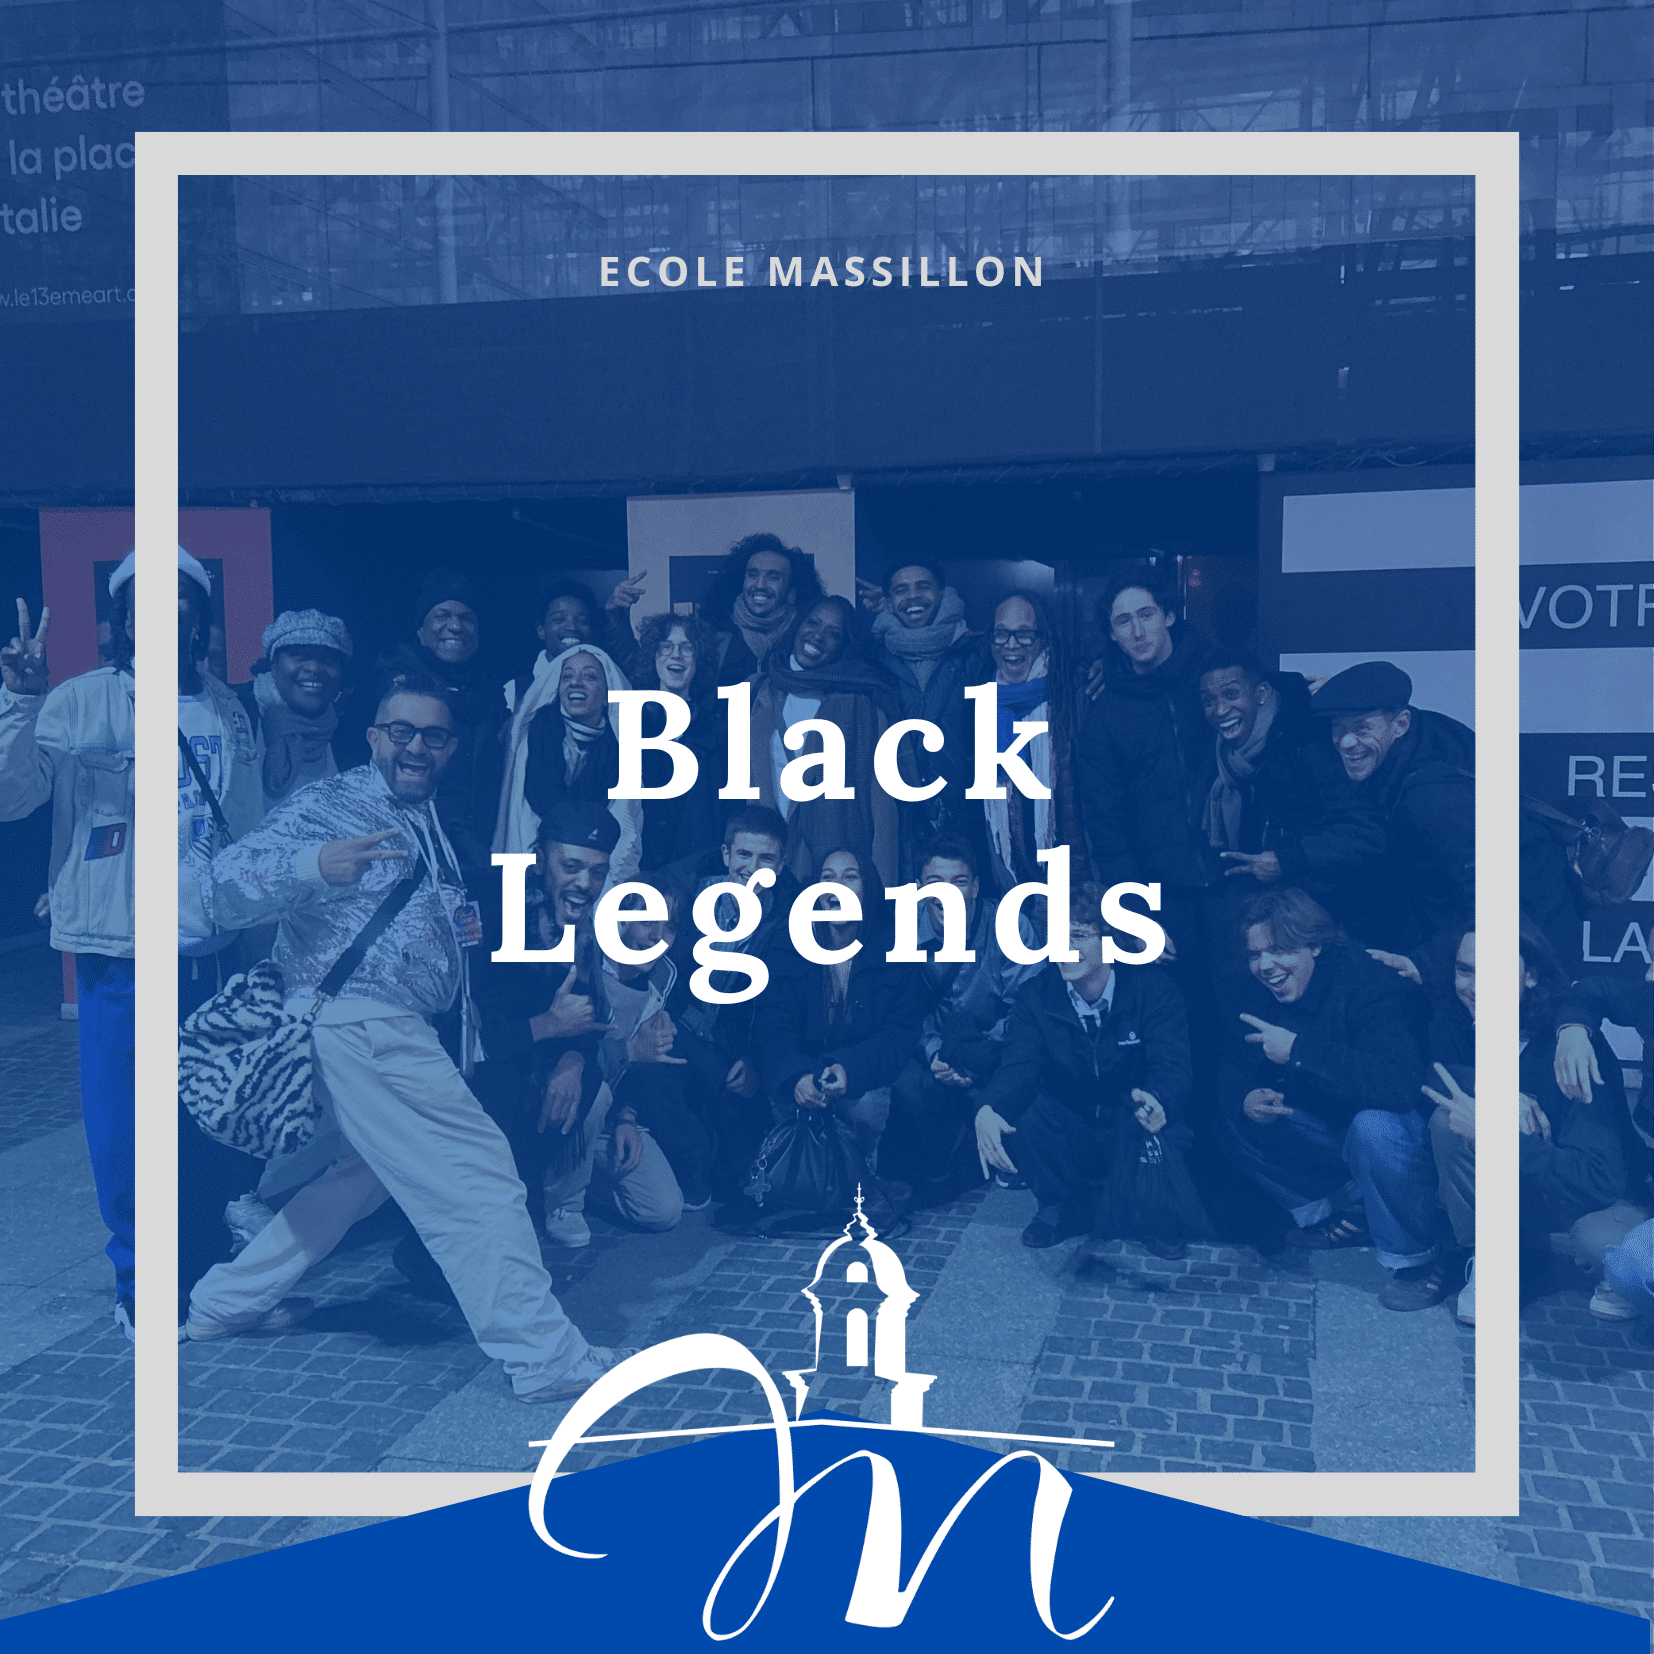 Black legends_1